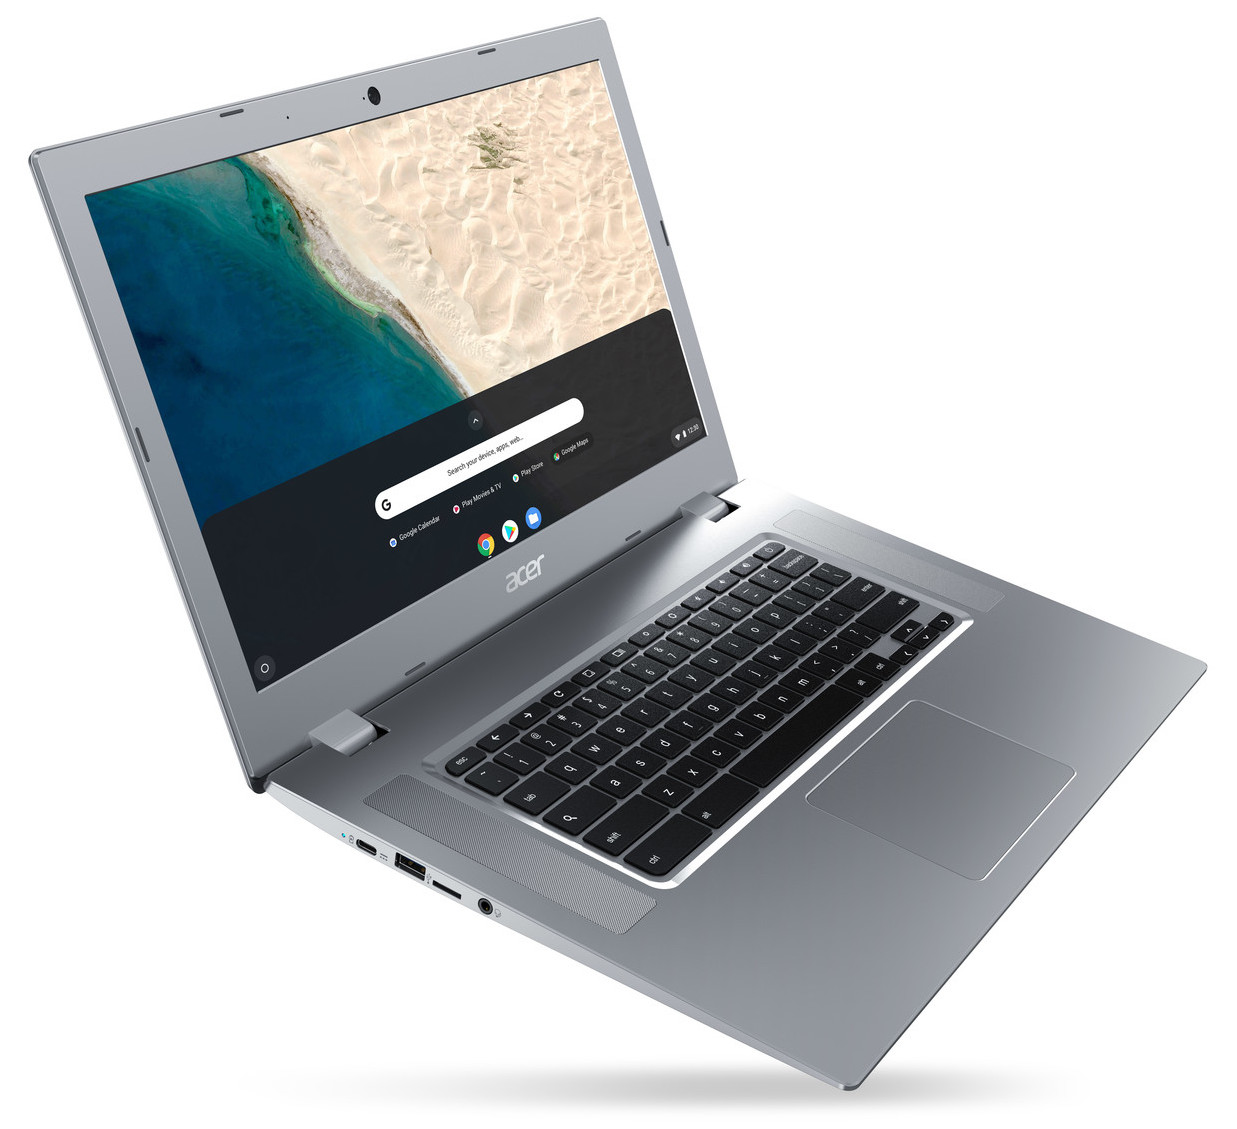 Acer Chromebook 315 – 15.6 HD Display Laptop Intel Celeron N4020